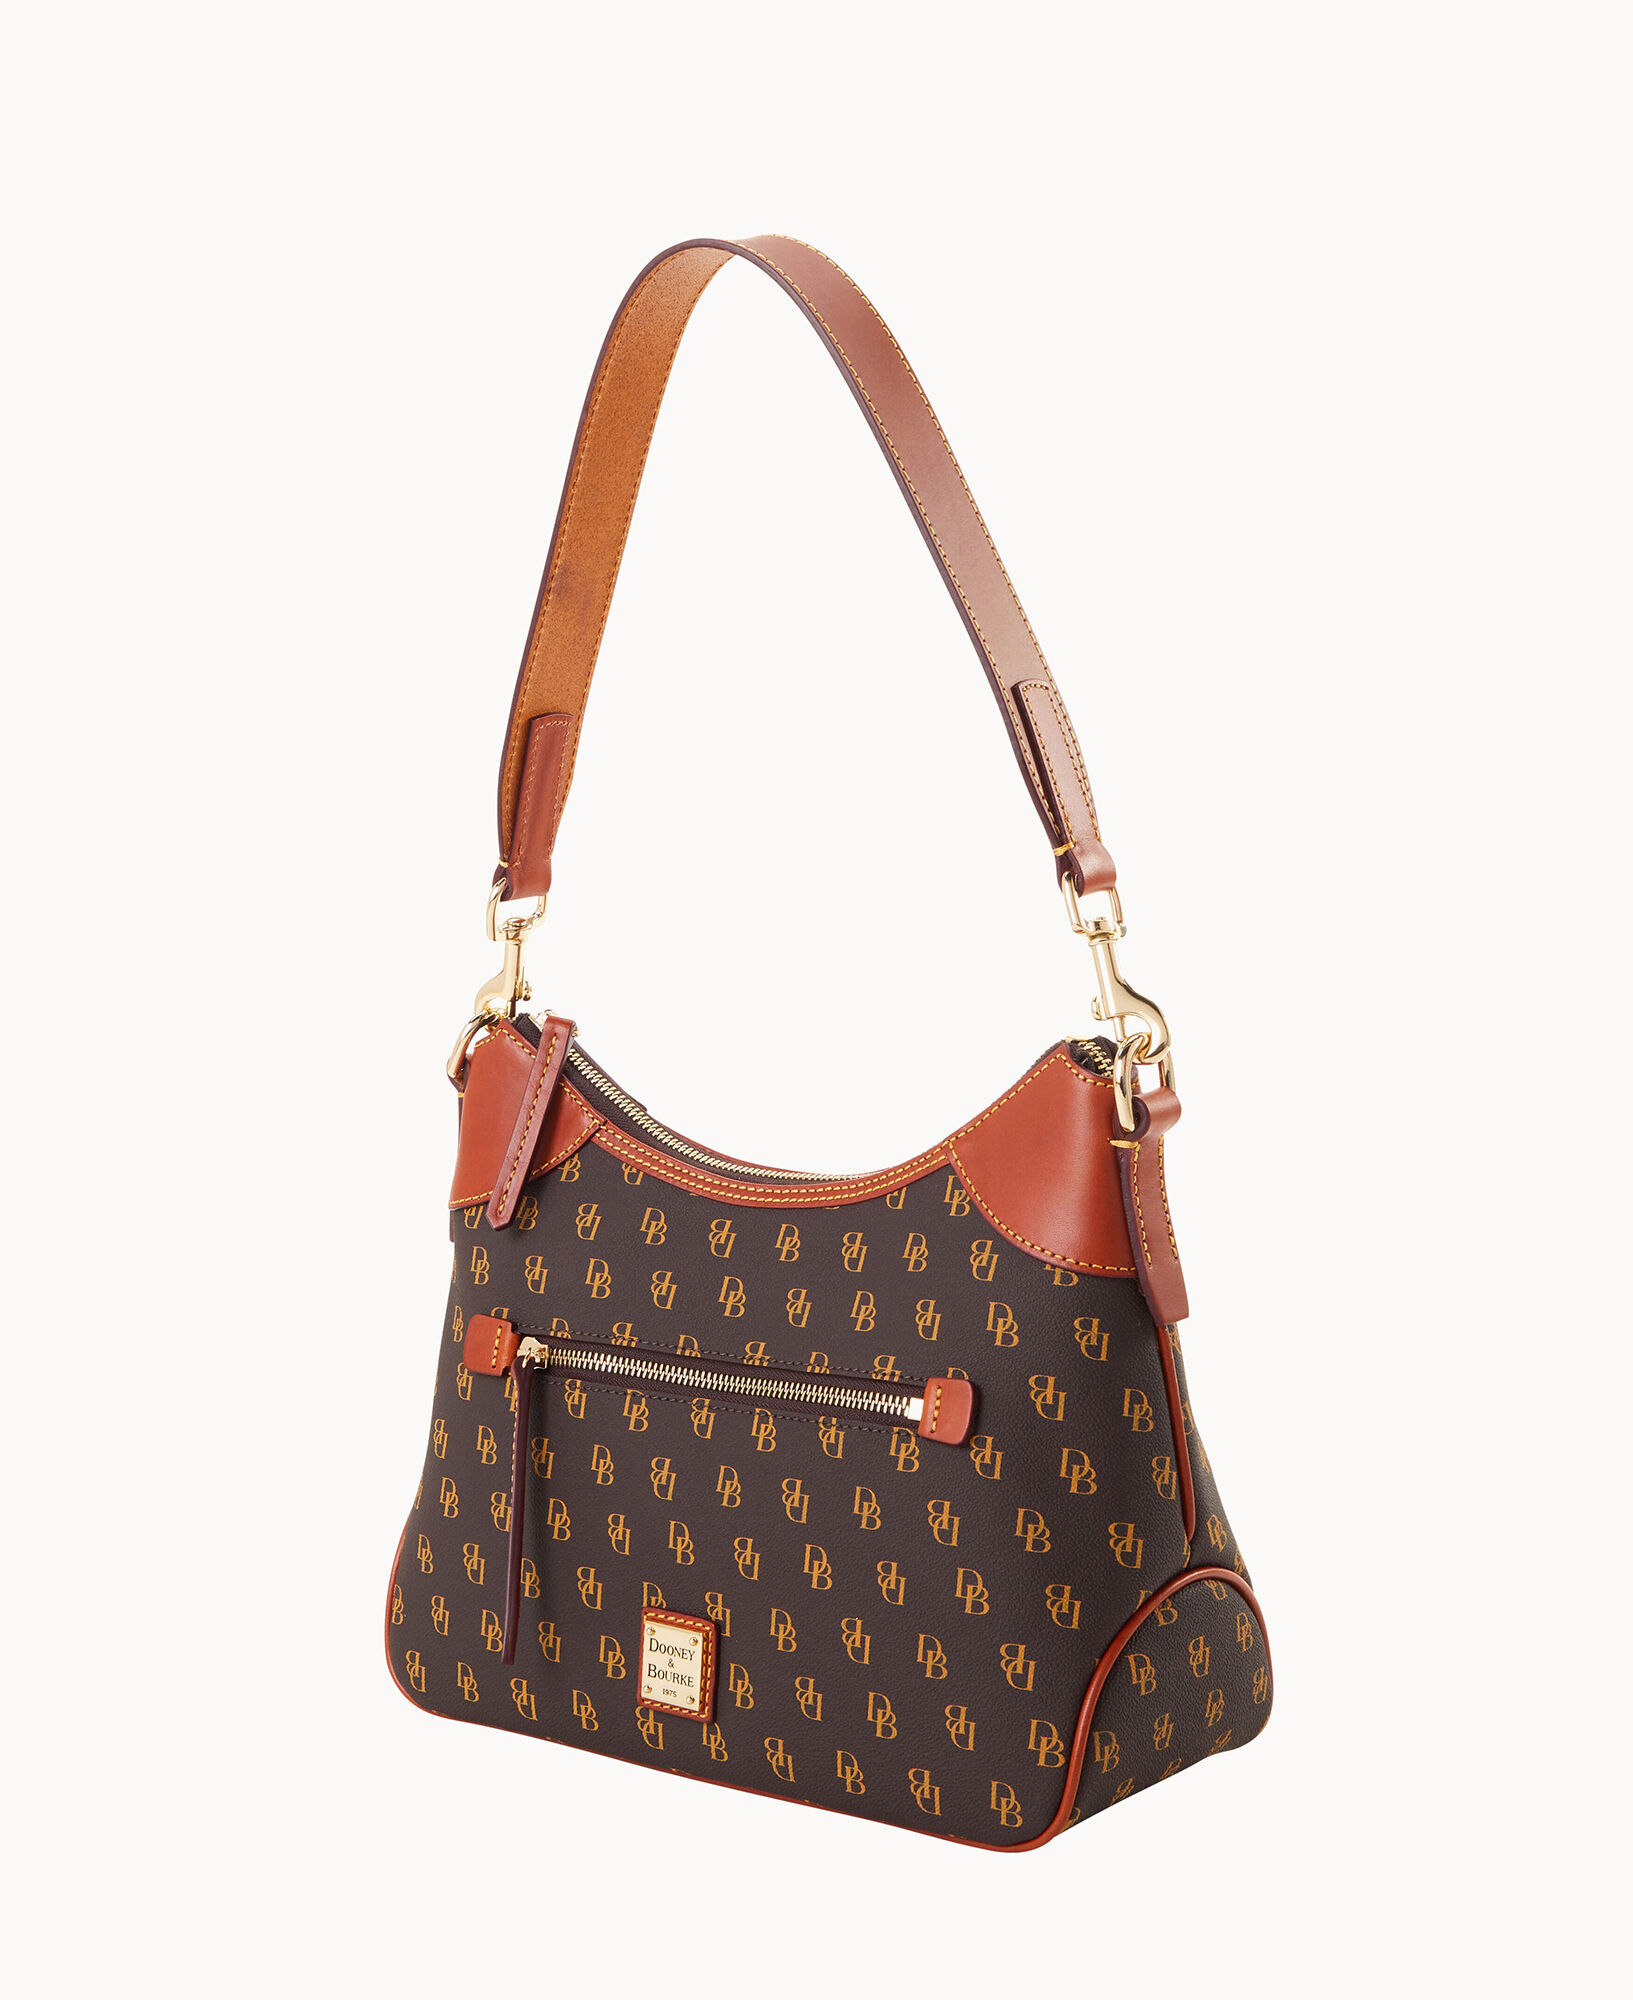 Dooney & Bourke Handbag, Gretta Shoulder Bag - Bone: Handbags